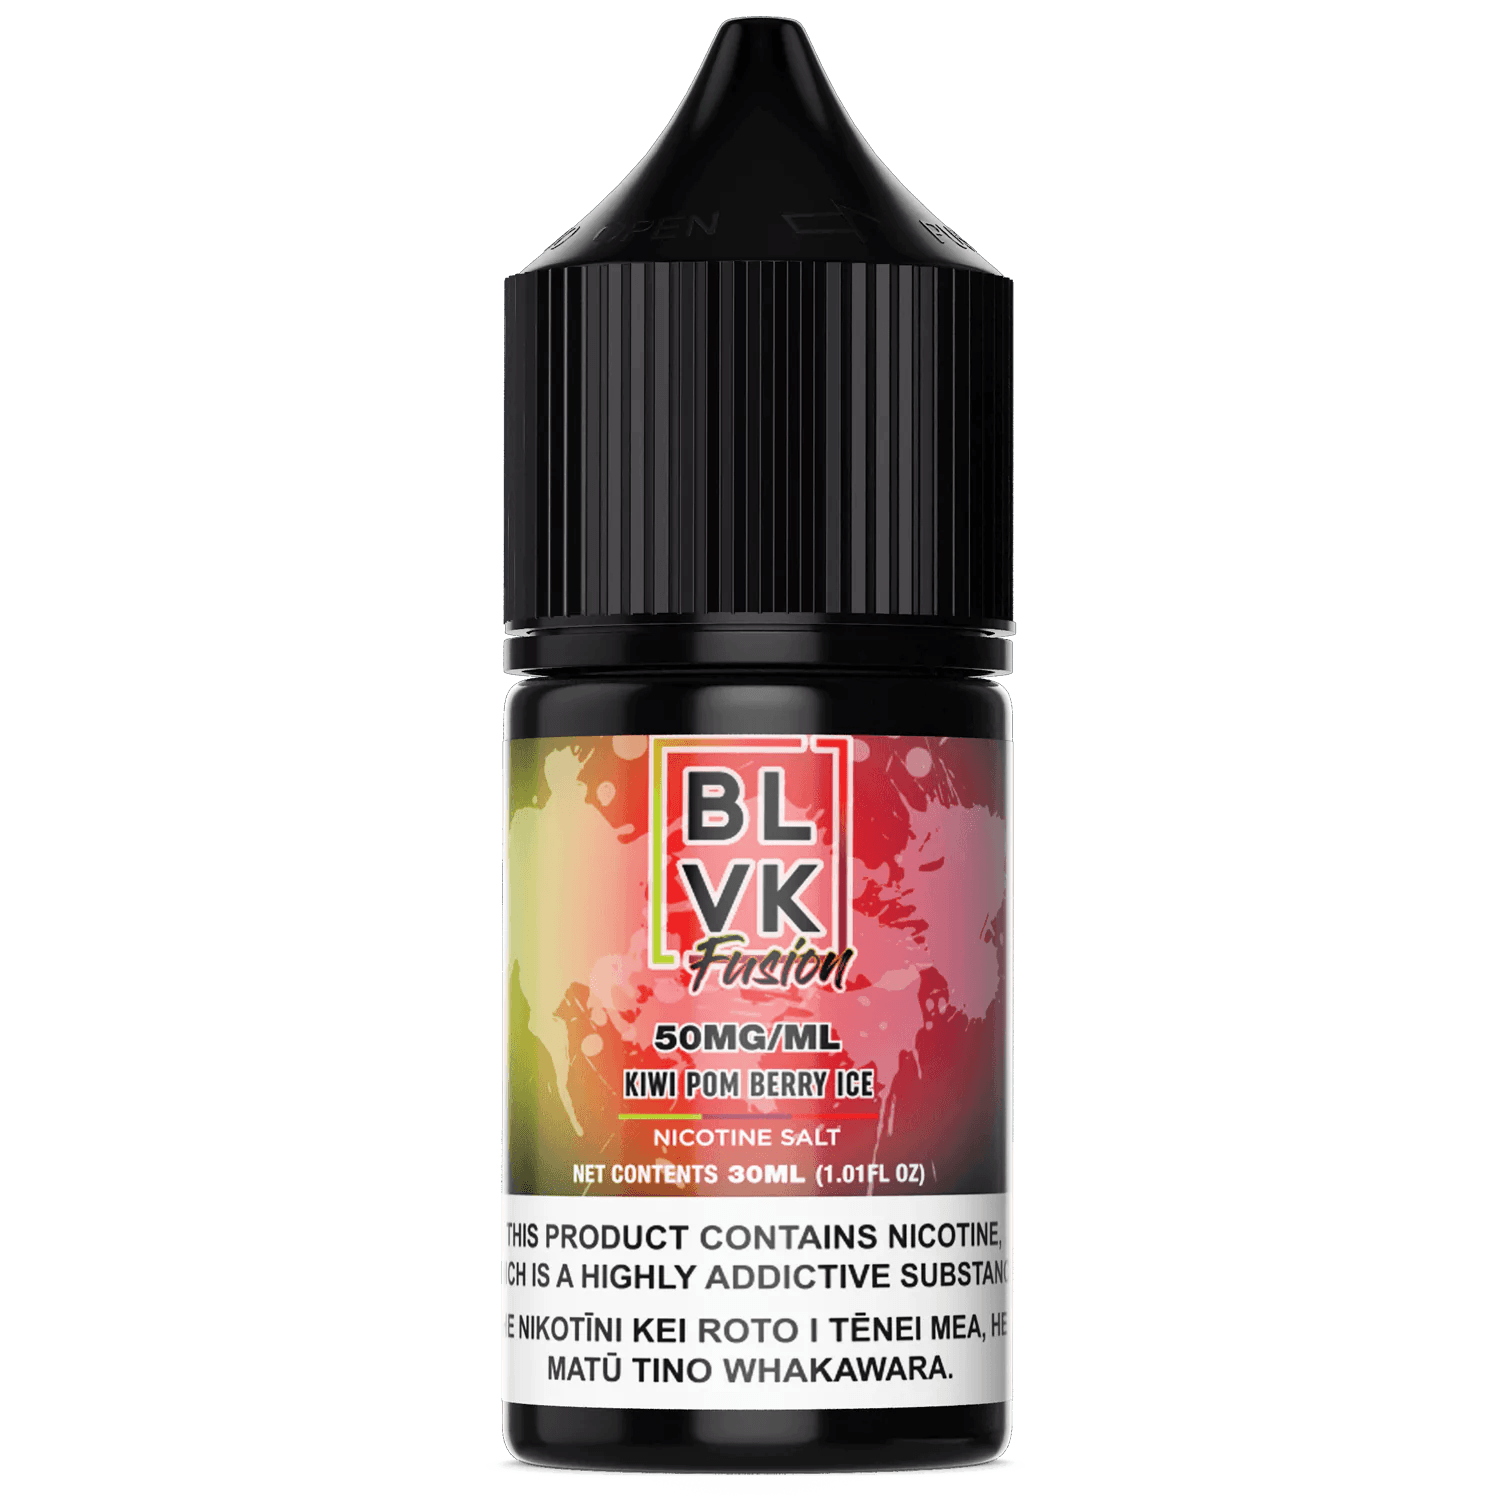 BLVK FUSION - Kiwi Pom Berry Ice - Vape Vend